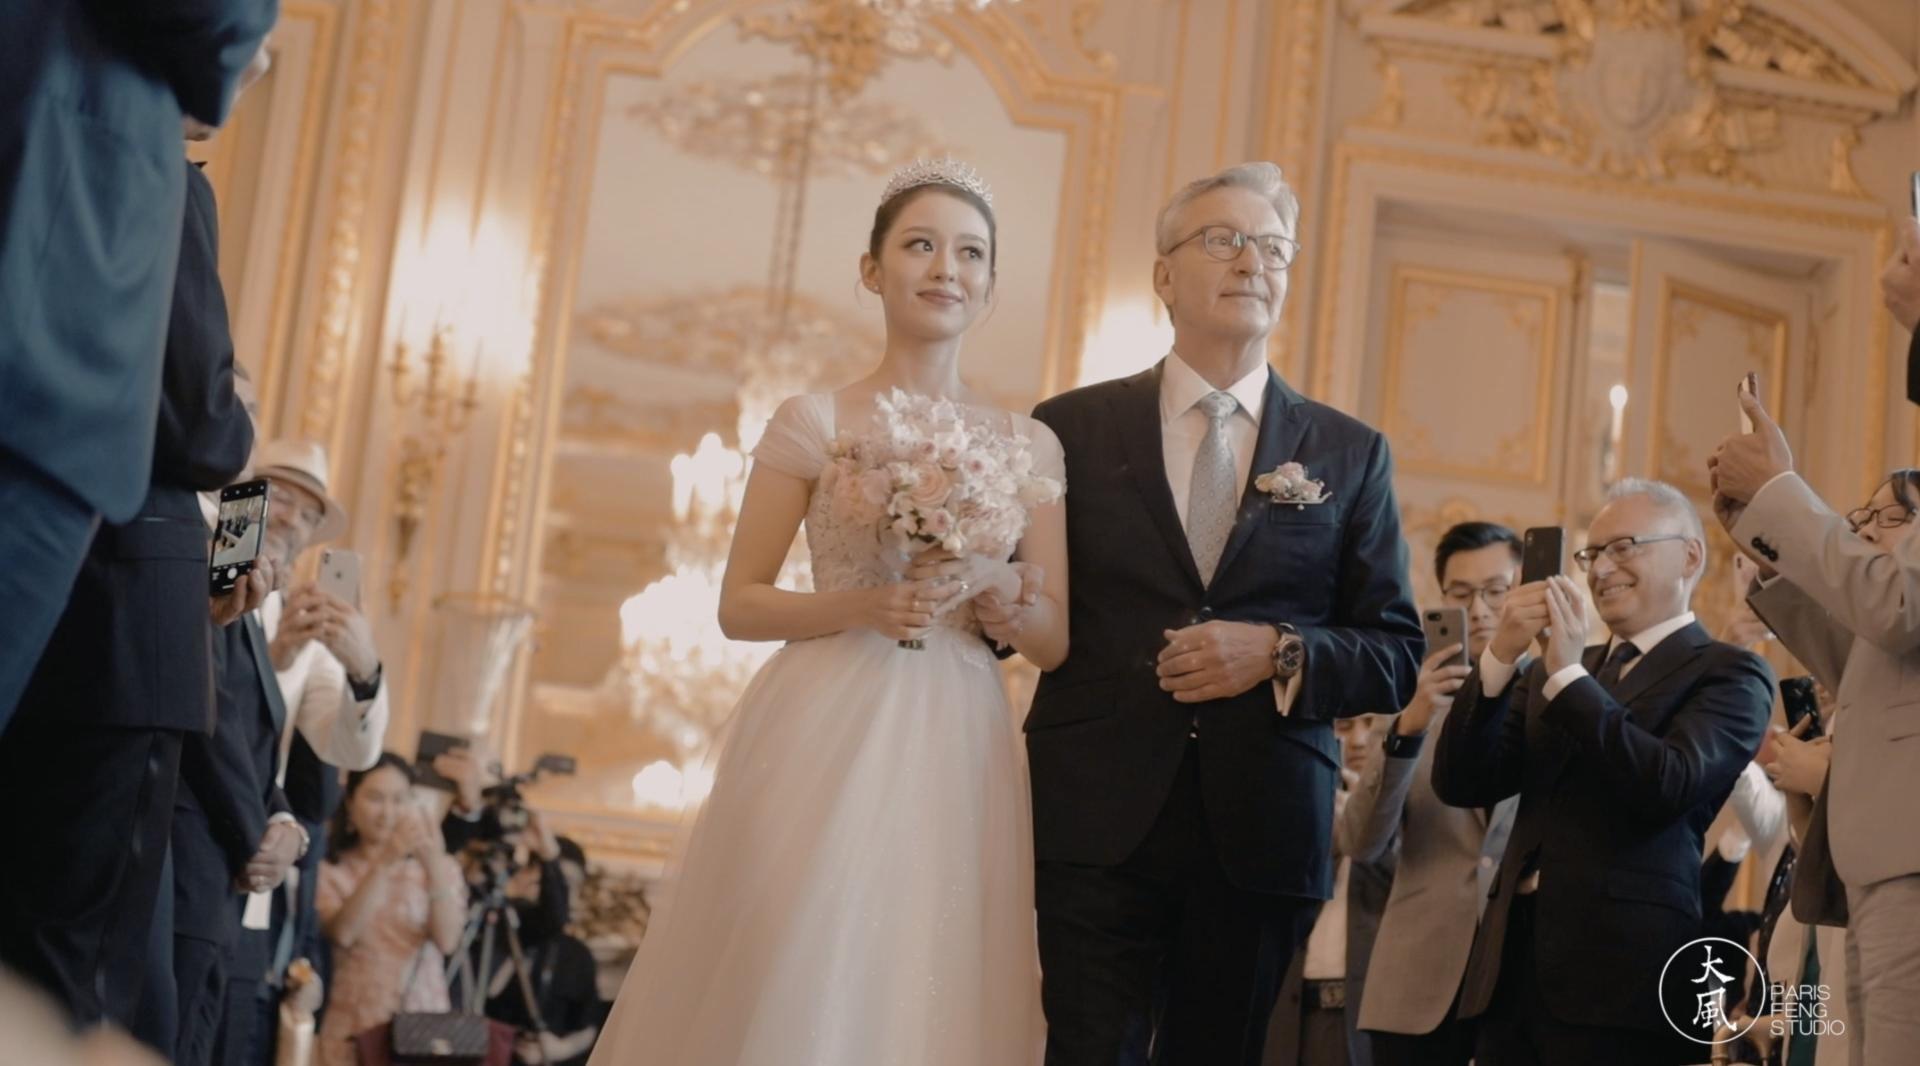 郎朗&吉娜 巴黎大婚 15秒婚礼现场记录预告片